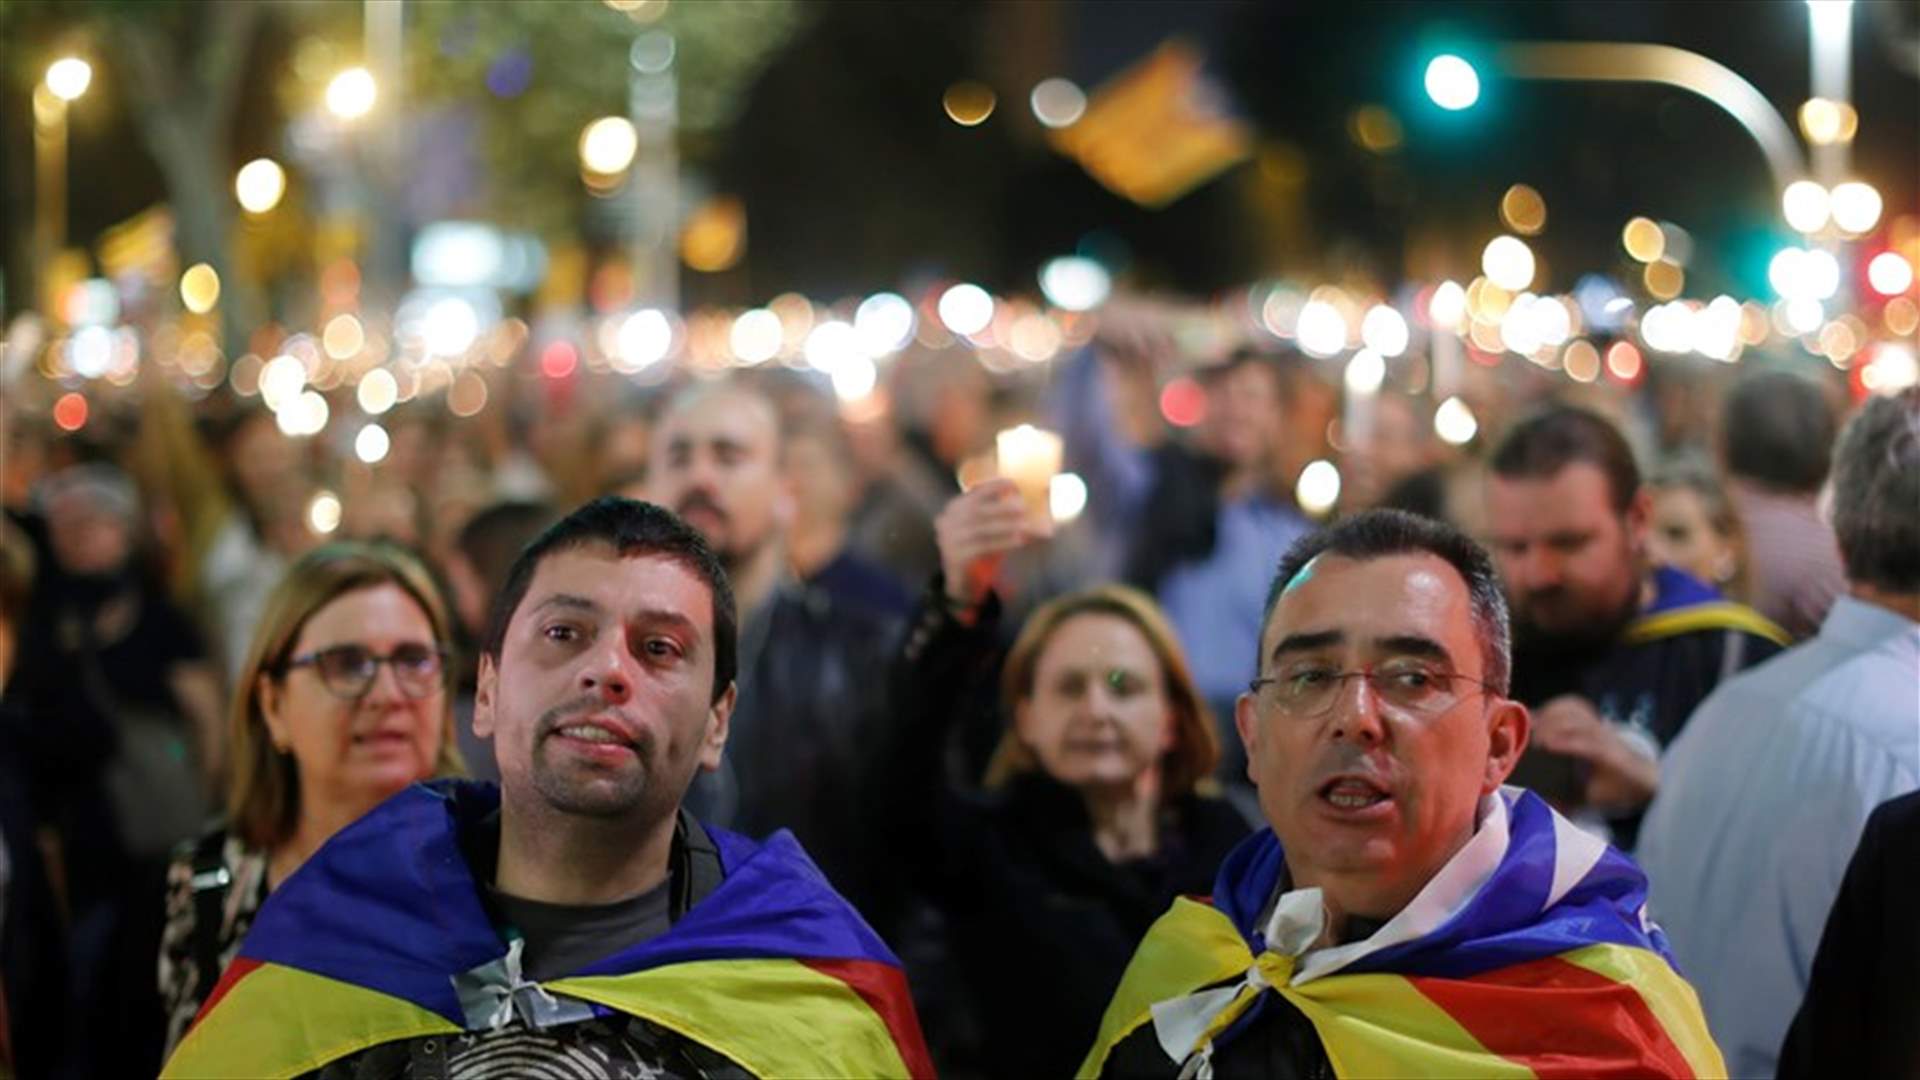 تظاهرة في برشلونة احتجاجا على اعتقال مسؤولين انفصاليين